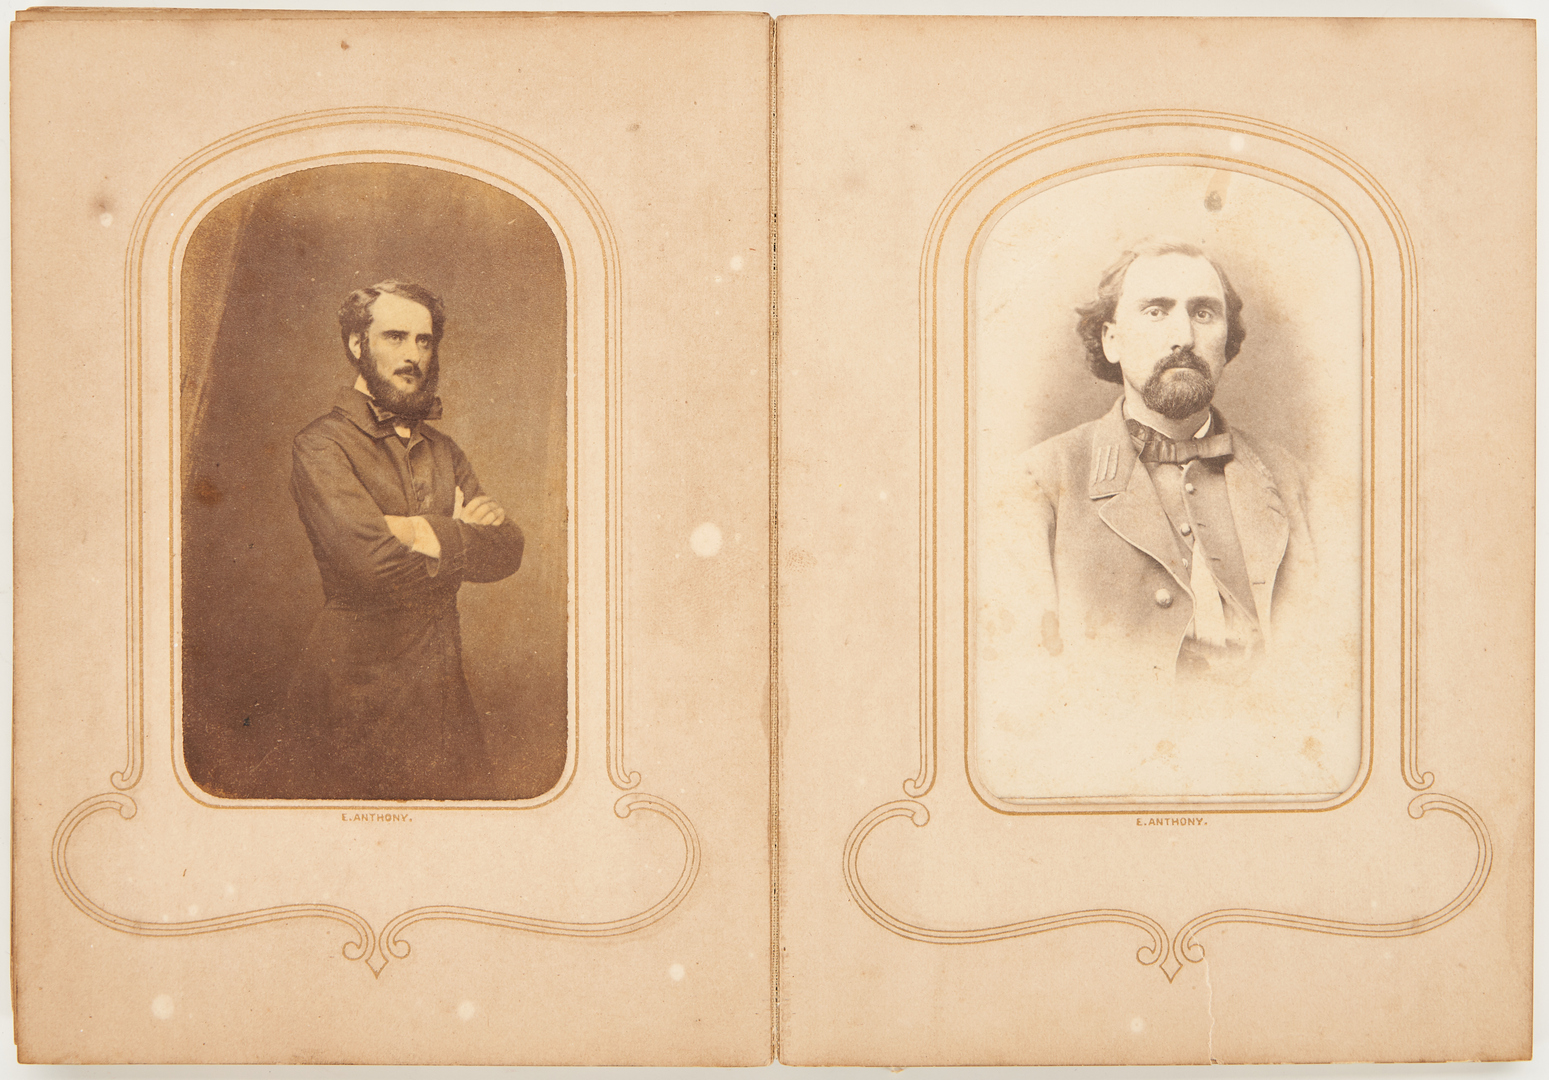 Lot 650: Partial Civil War Album, incl. Confederate Leaders